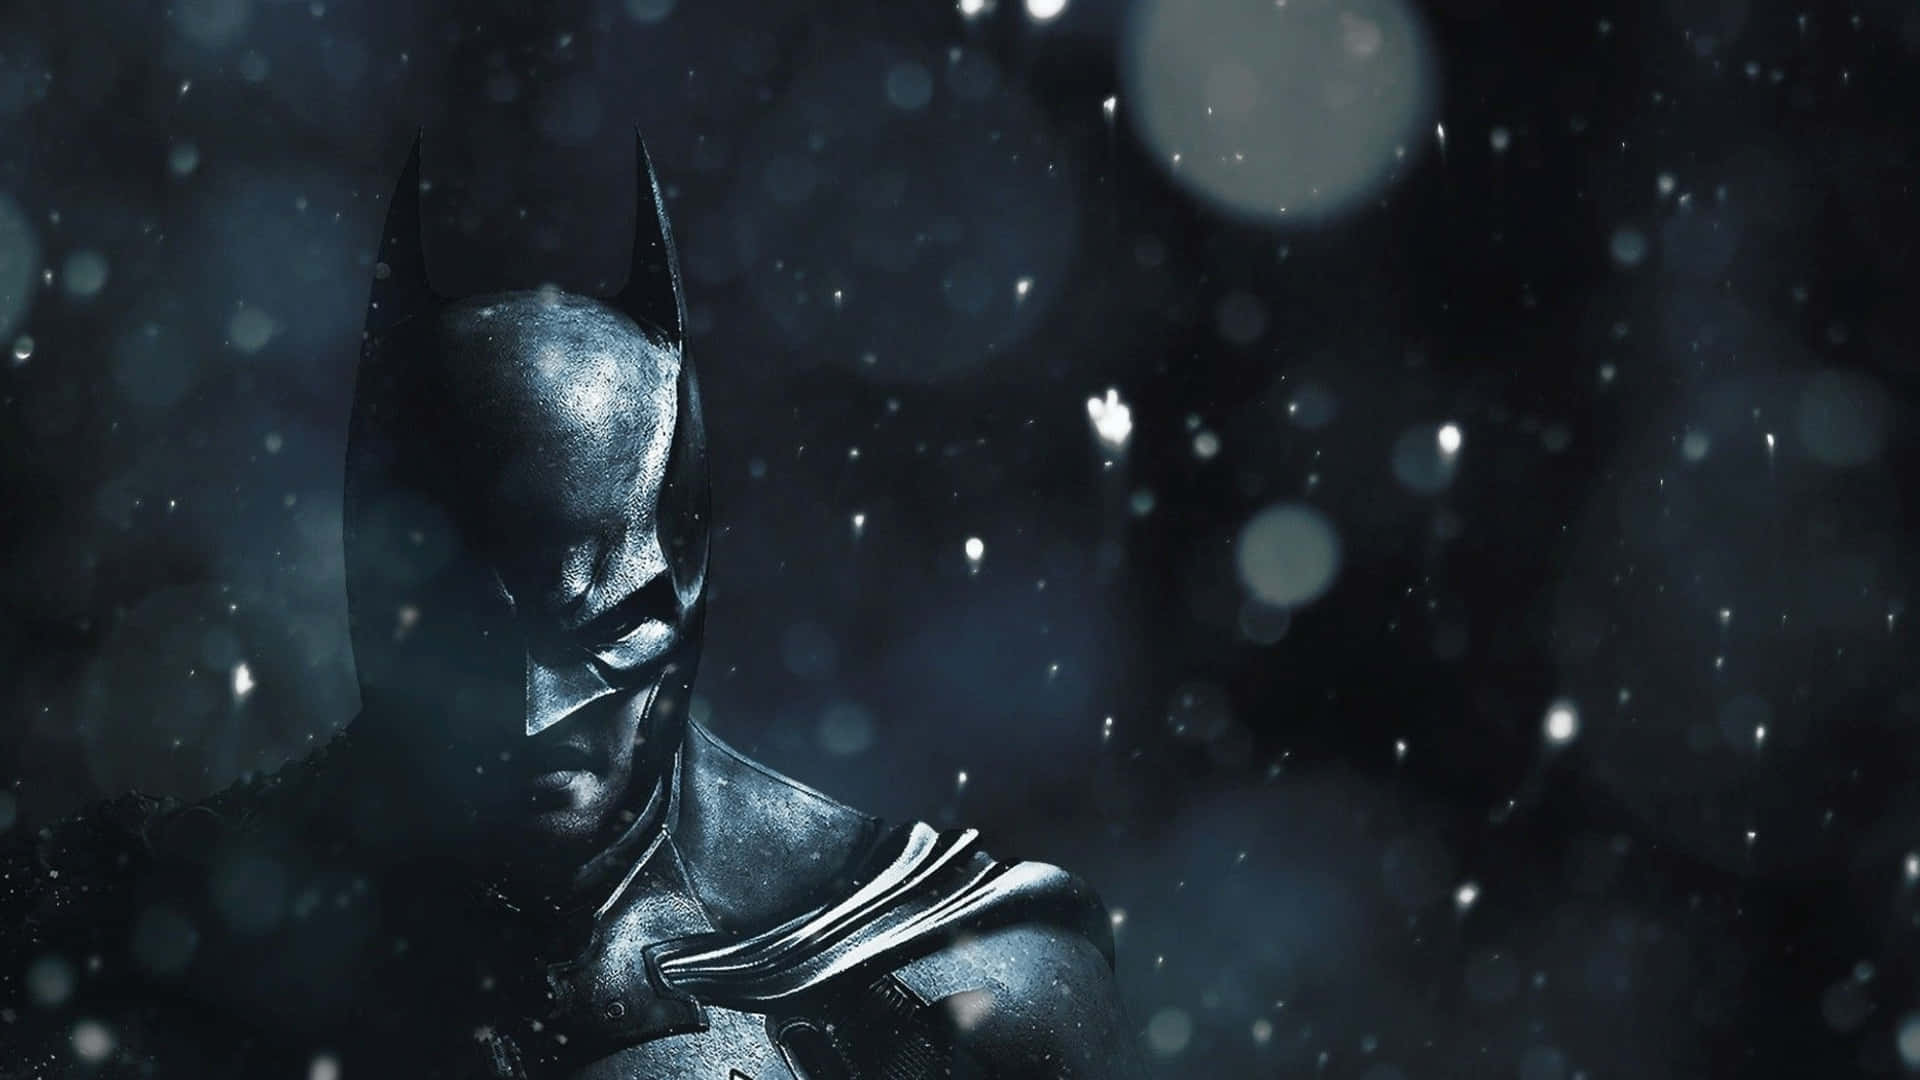 Dark Knight Snowfall Vigilance.jpg Wallpaper